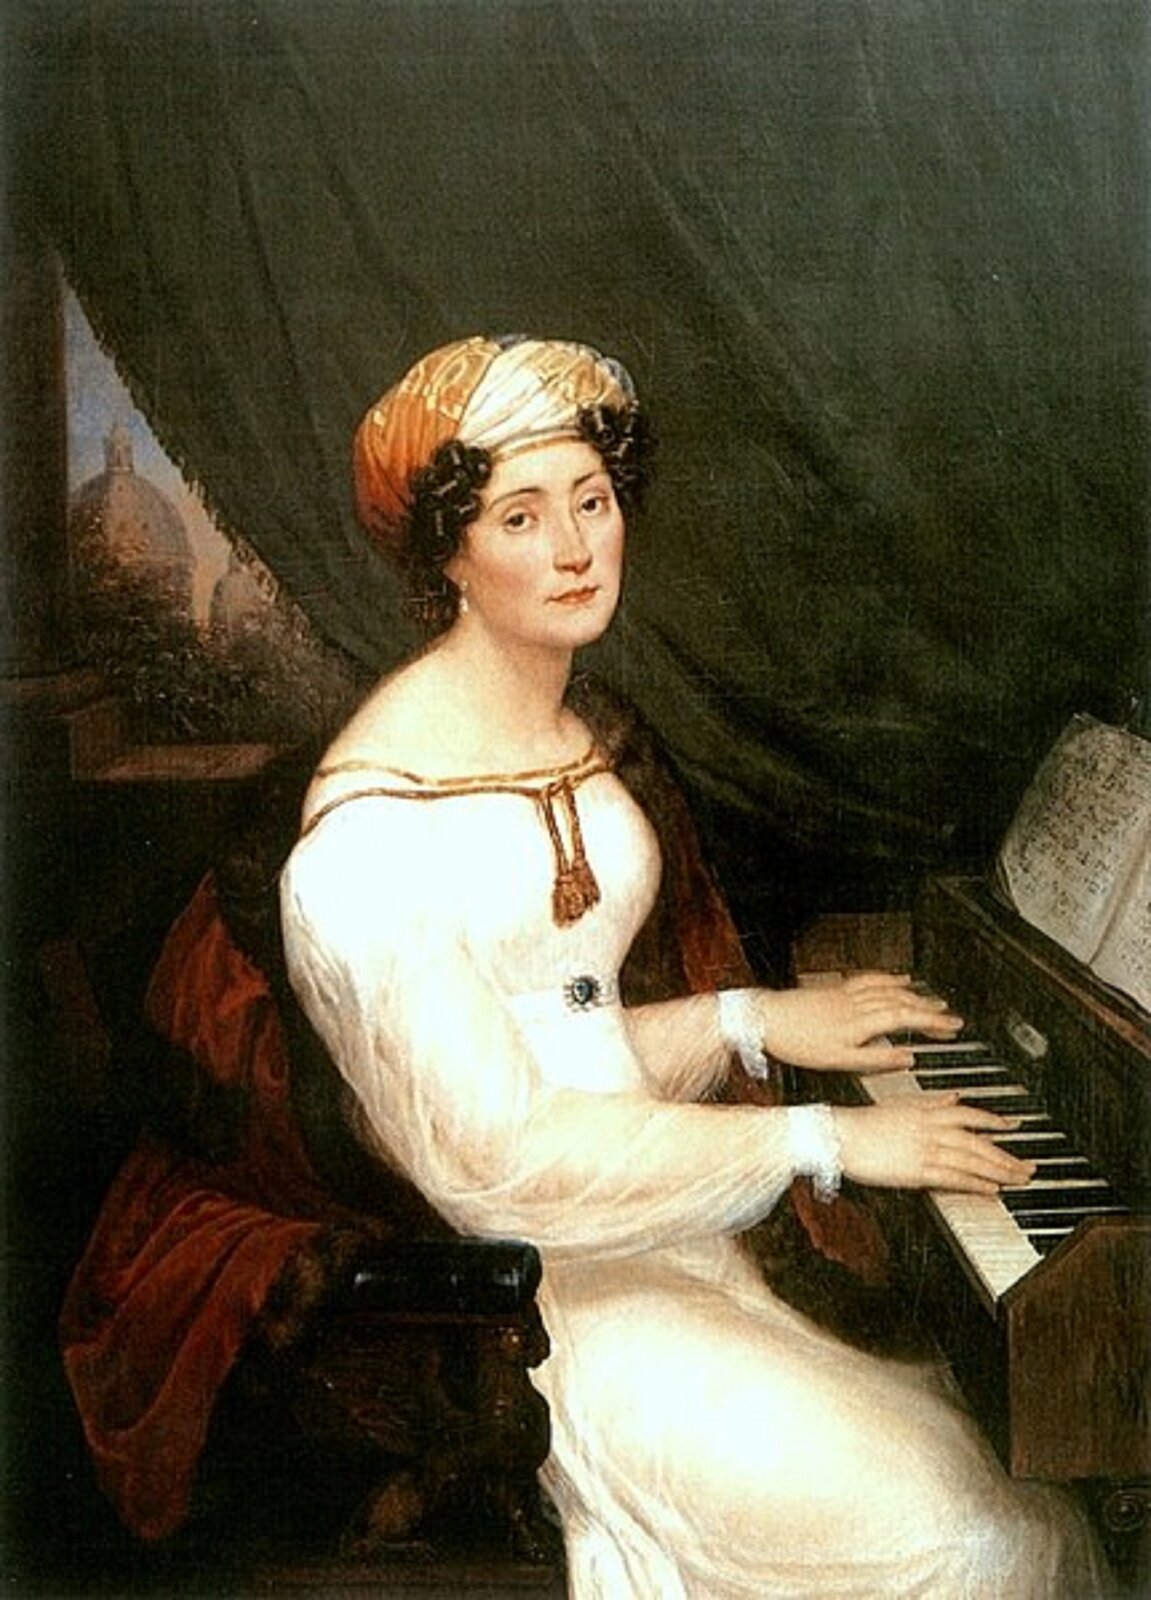 Ilustracja przedstawia portret Marii Szymanowskiej, która siedzi przy pianinie, na którym gra. Do portretu obróciła się twarzą, ma kręcone, ciemne włosy, na głowie ma zawinięty turban. Ubrana jest w białą suknię.